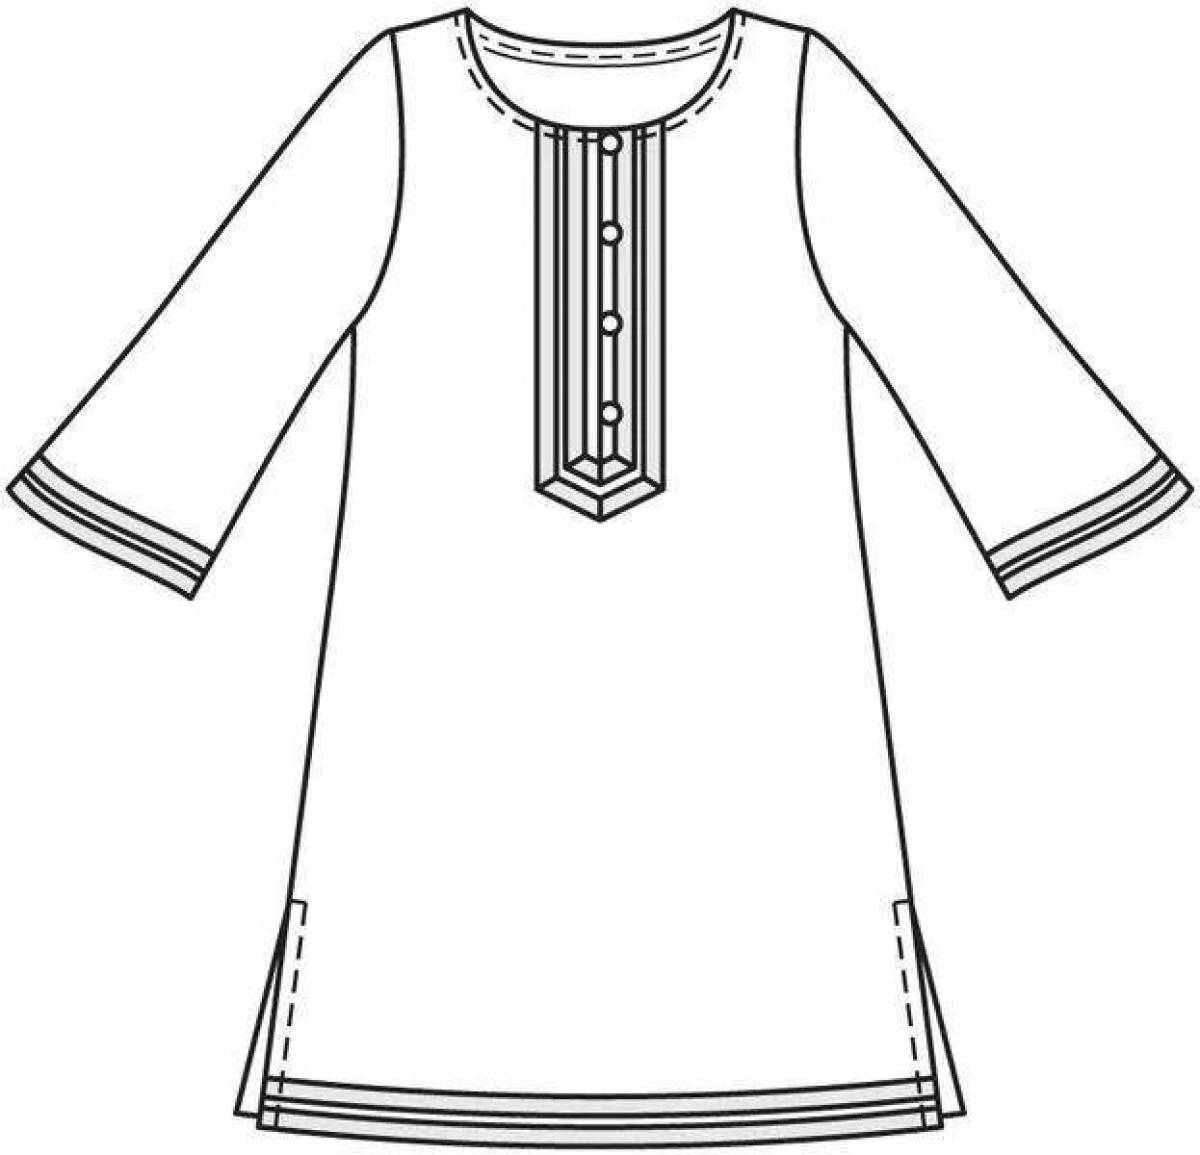 Чувашское платье для рисования